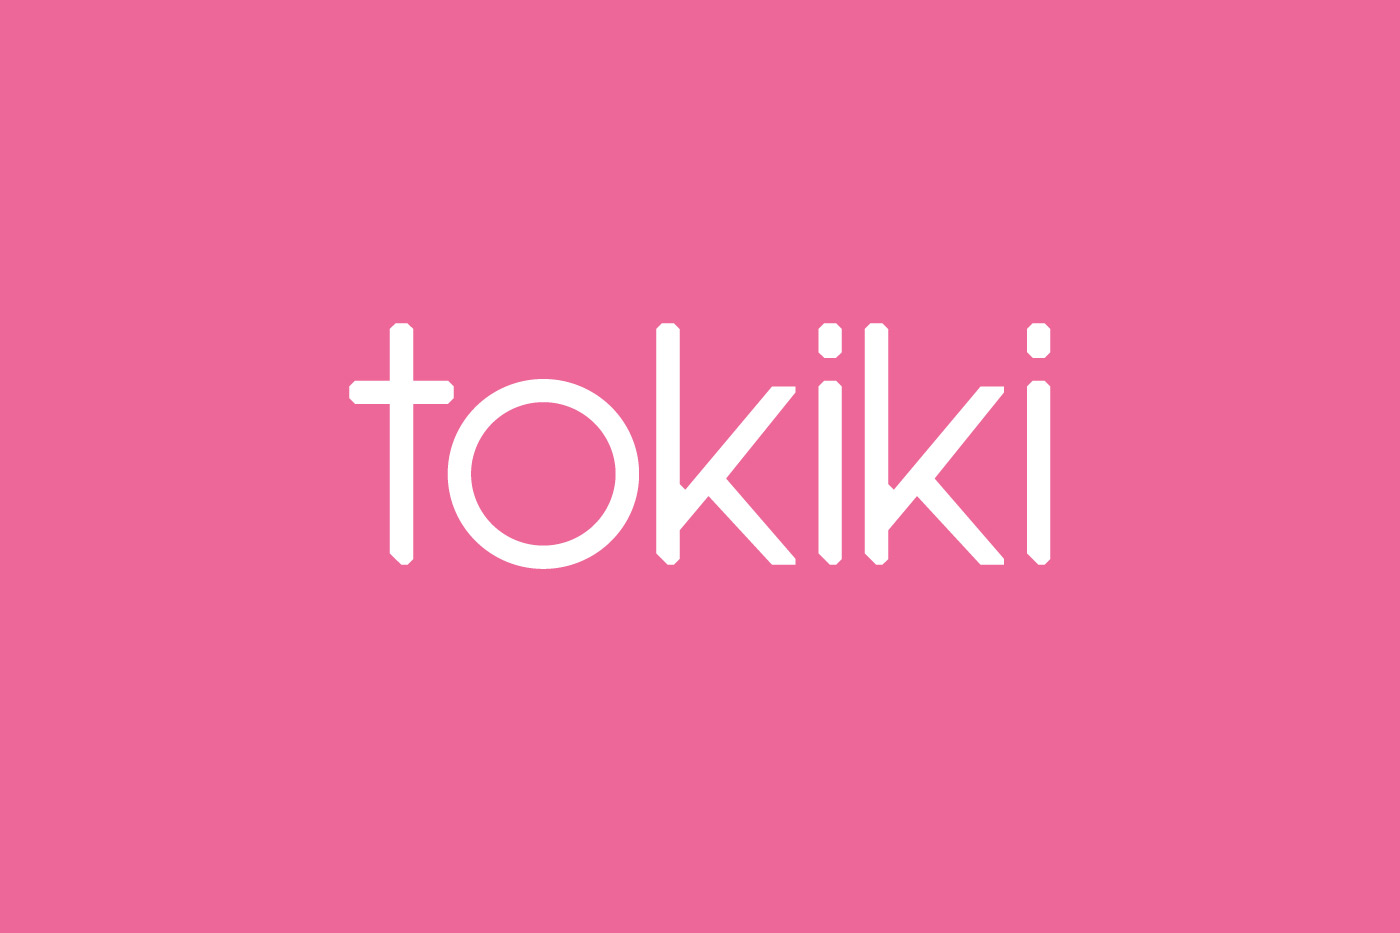 Tokiki branding